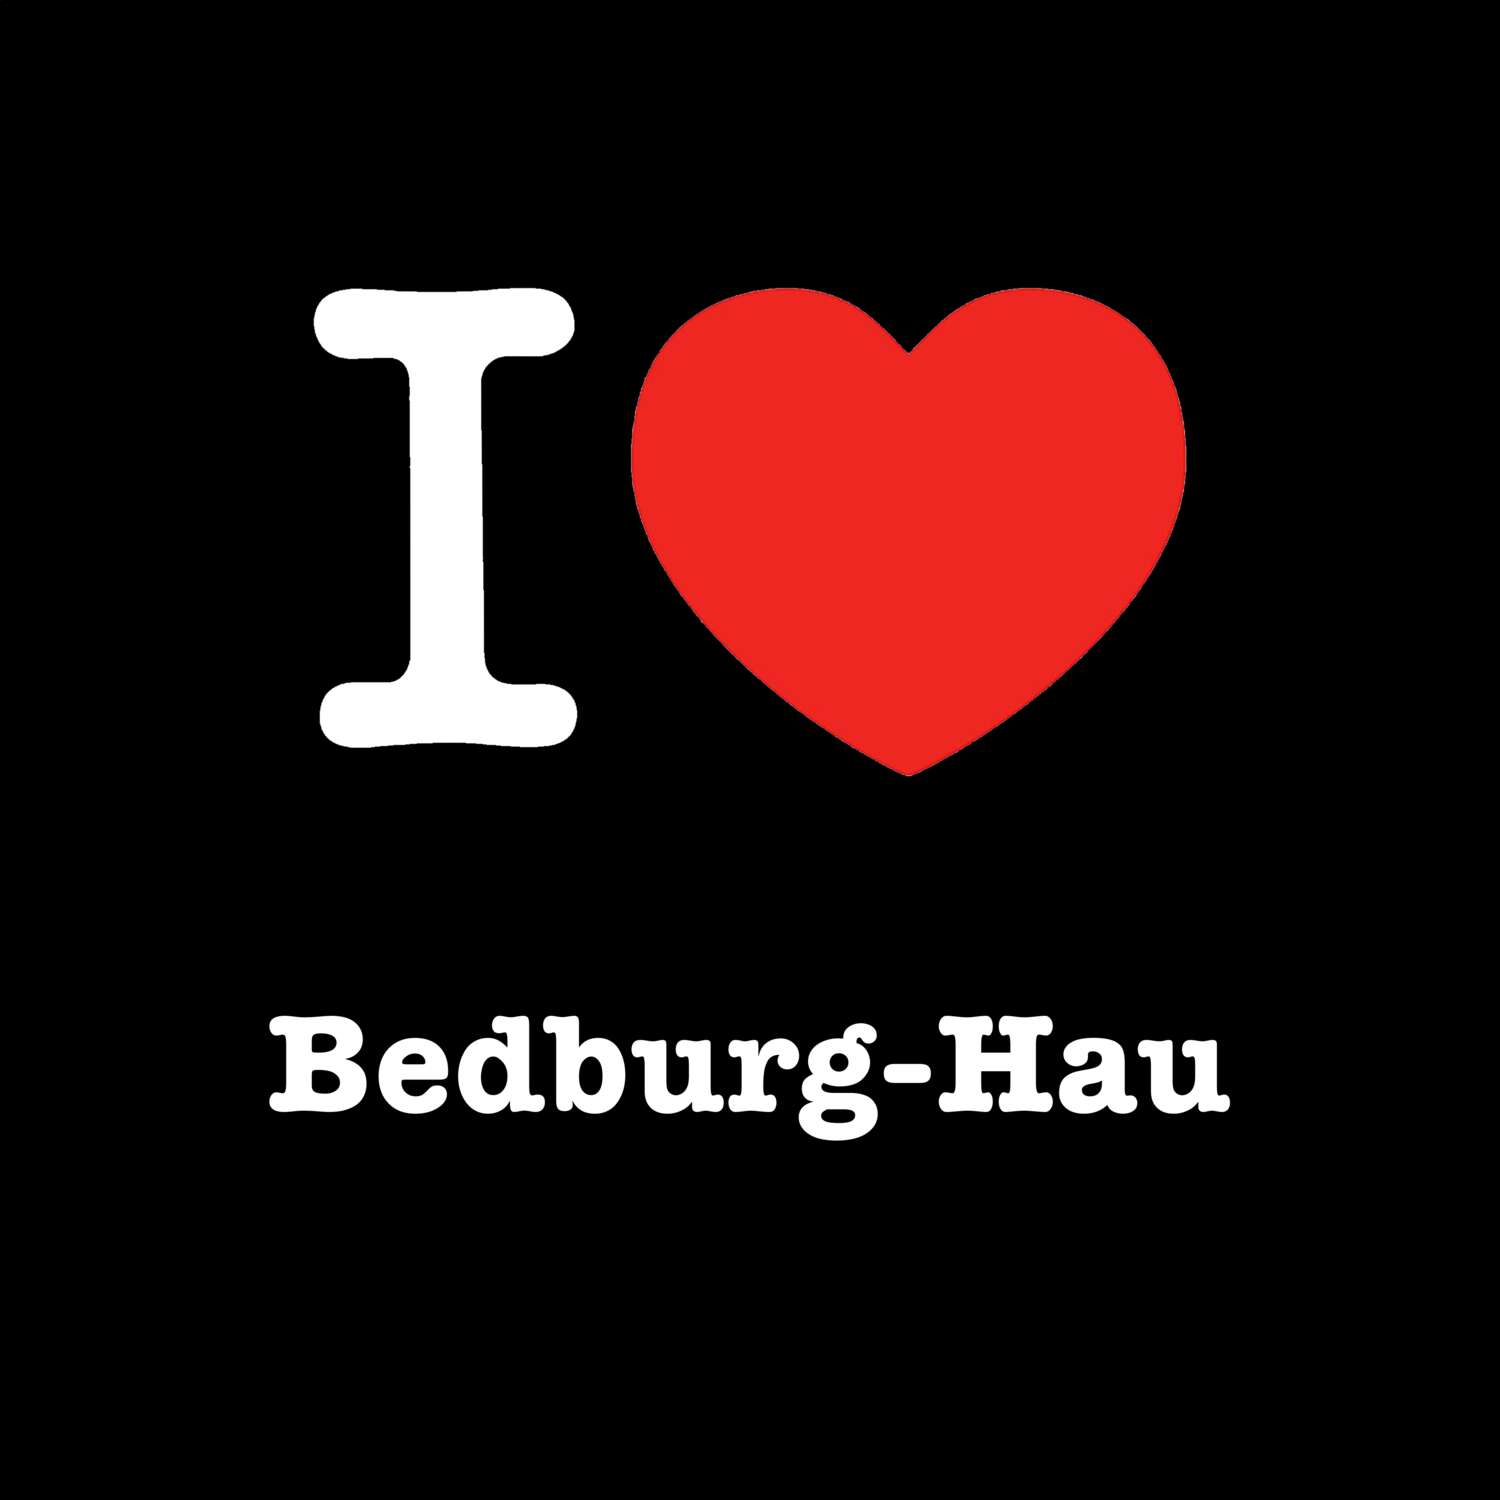 Bedburg-Hau T-Shirt »I love«